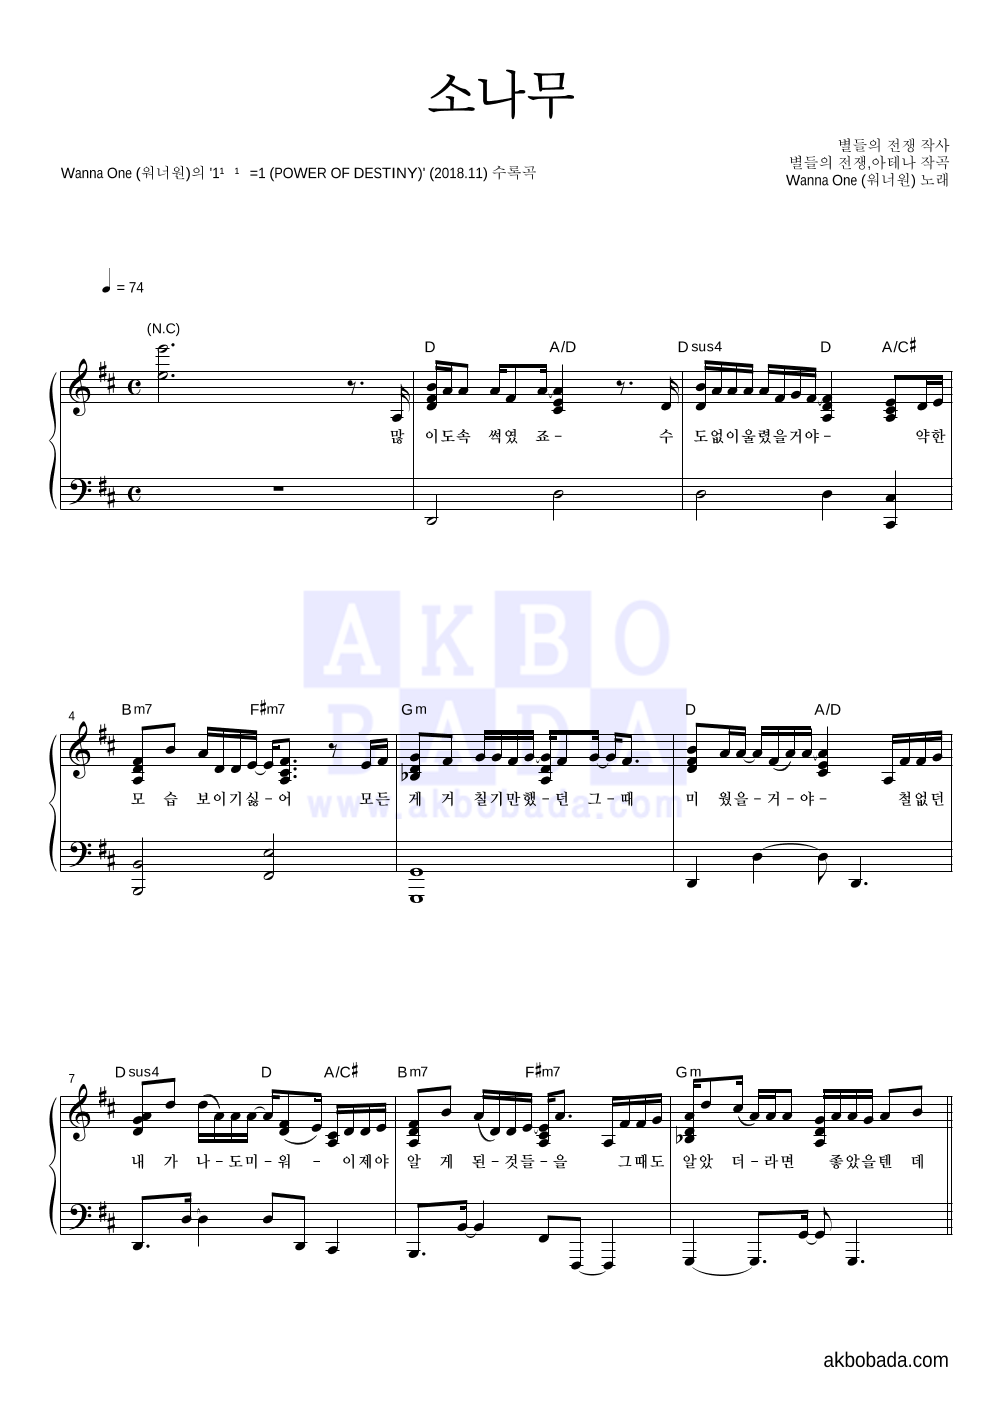 워너원 - 소나무 피아노 2단 악보 